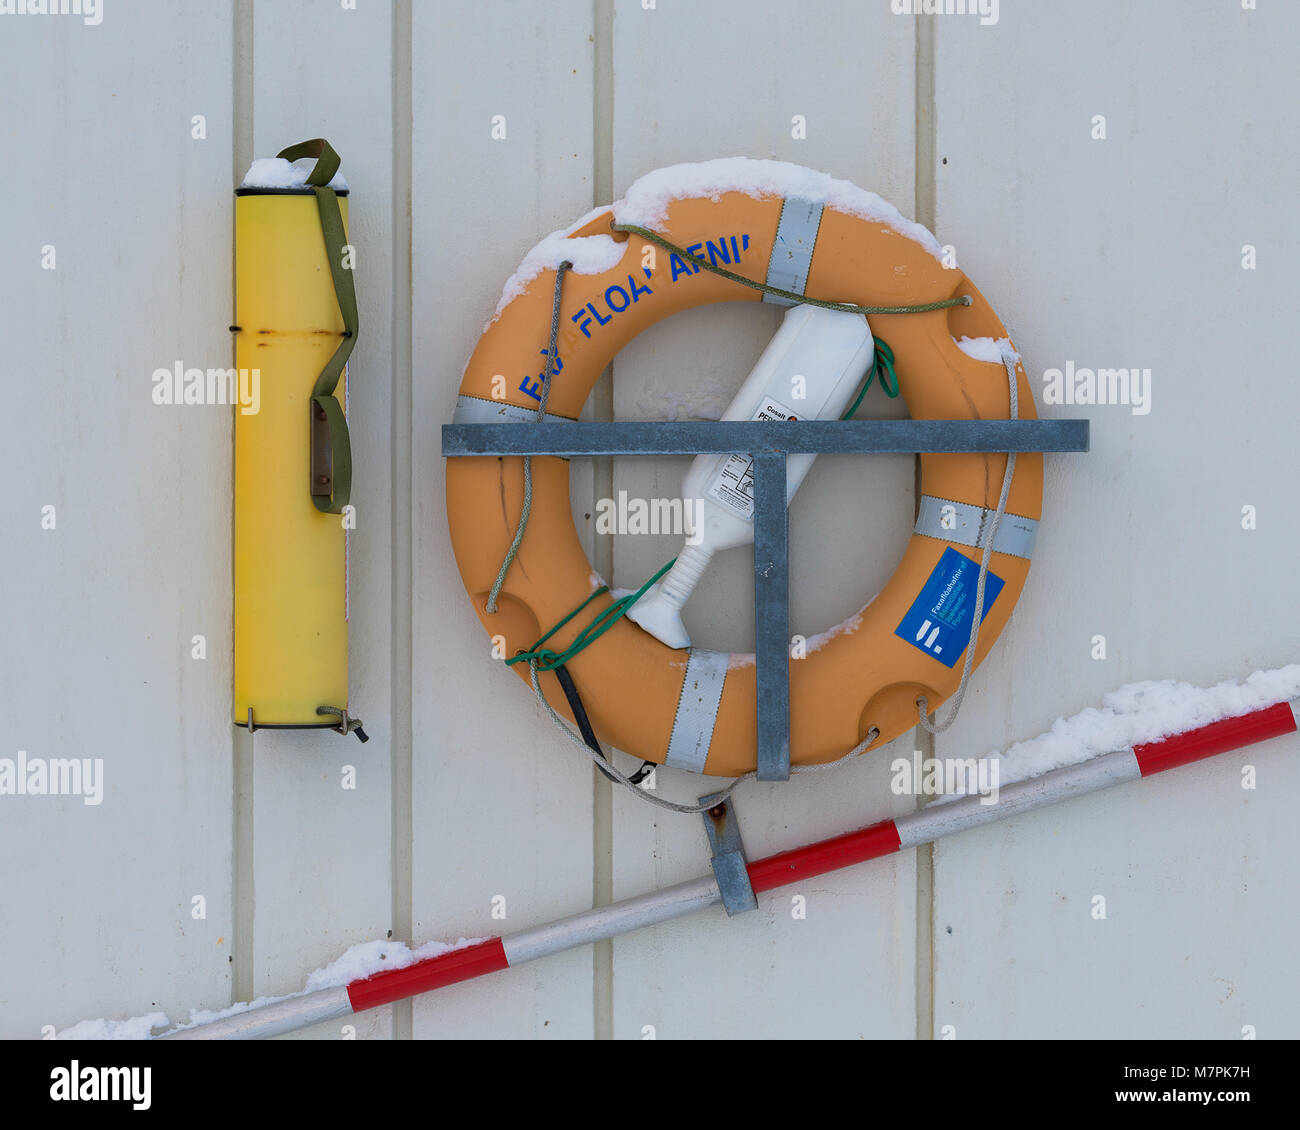 Ein paar Rettungsschwimmer Ausrüstungsgegenstände hängen an Marina Wand Stockfoto